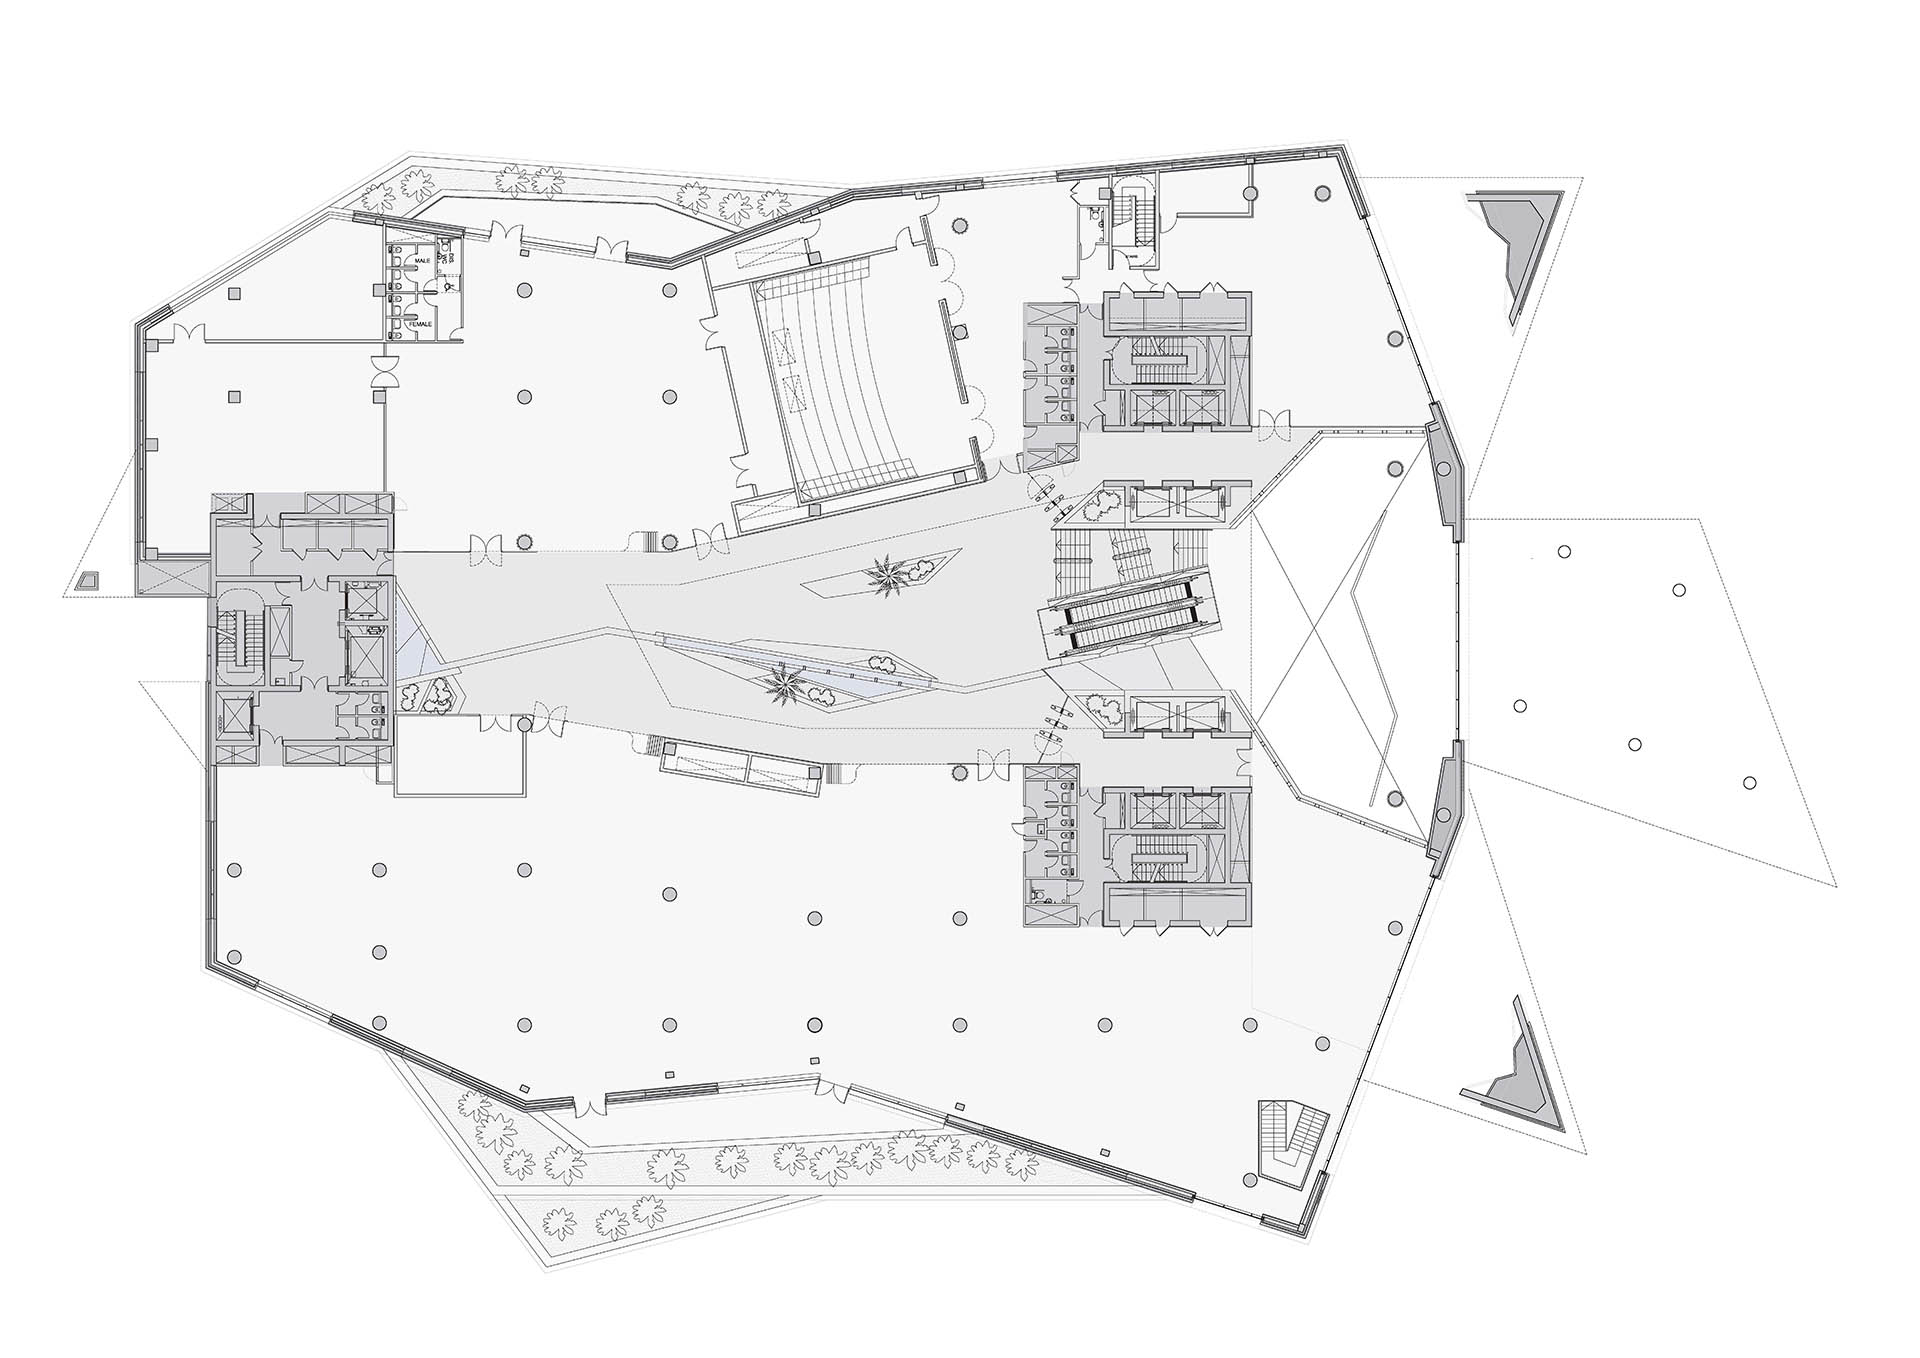 <p>Mezzanine floor level plan</p>